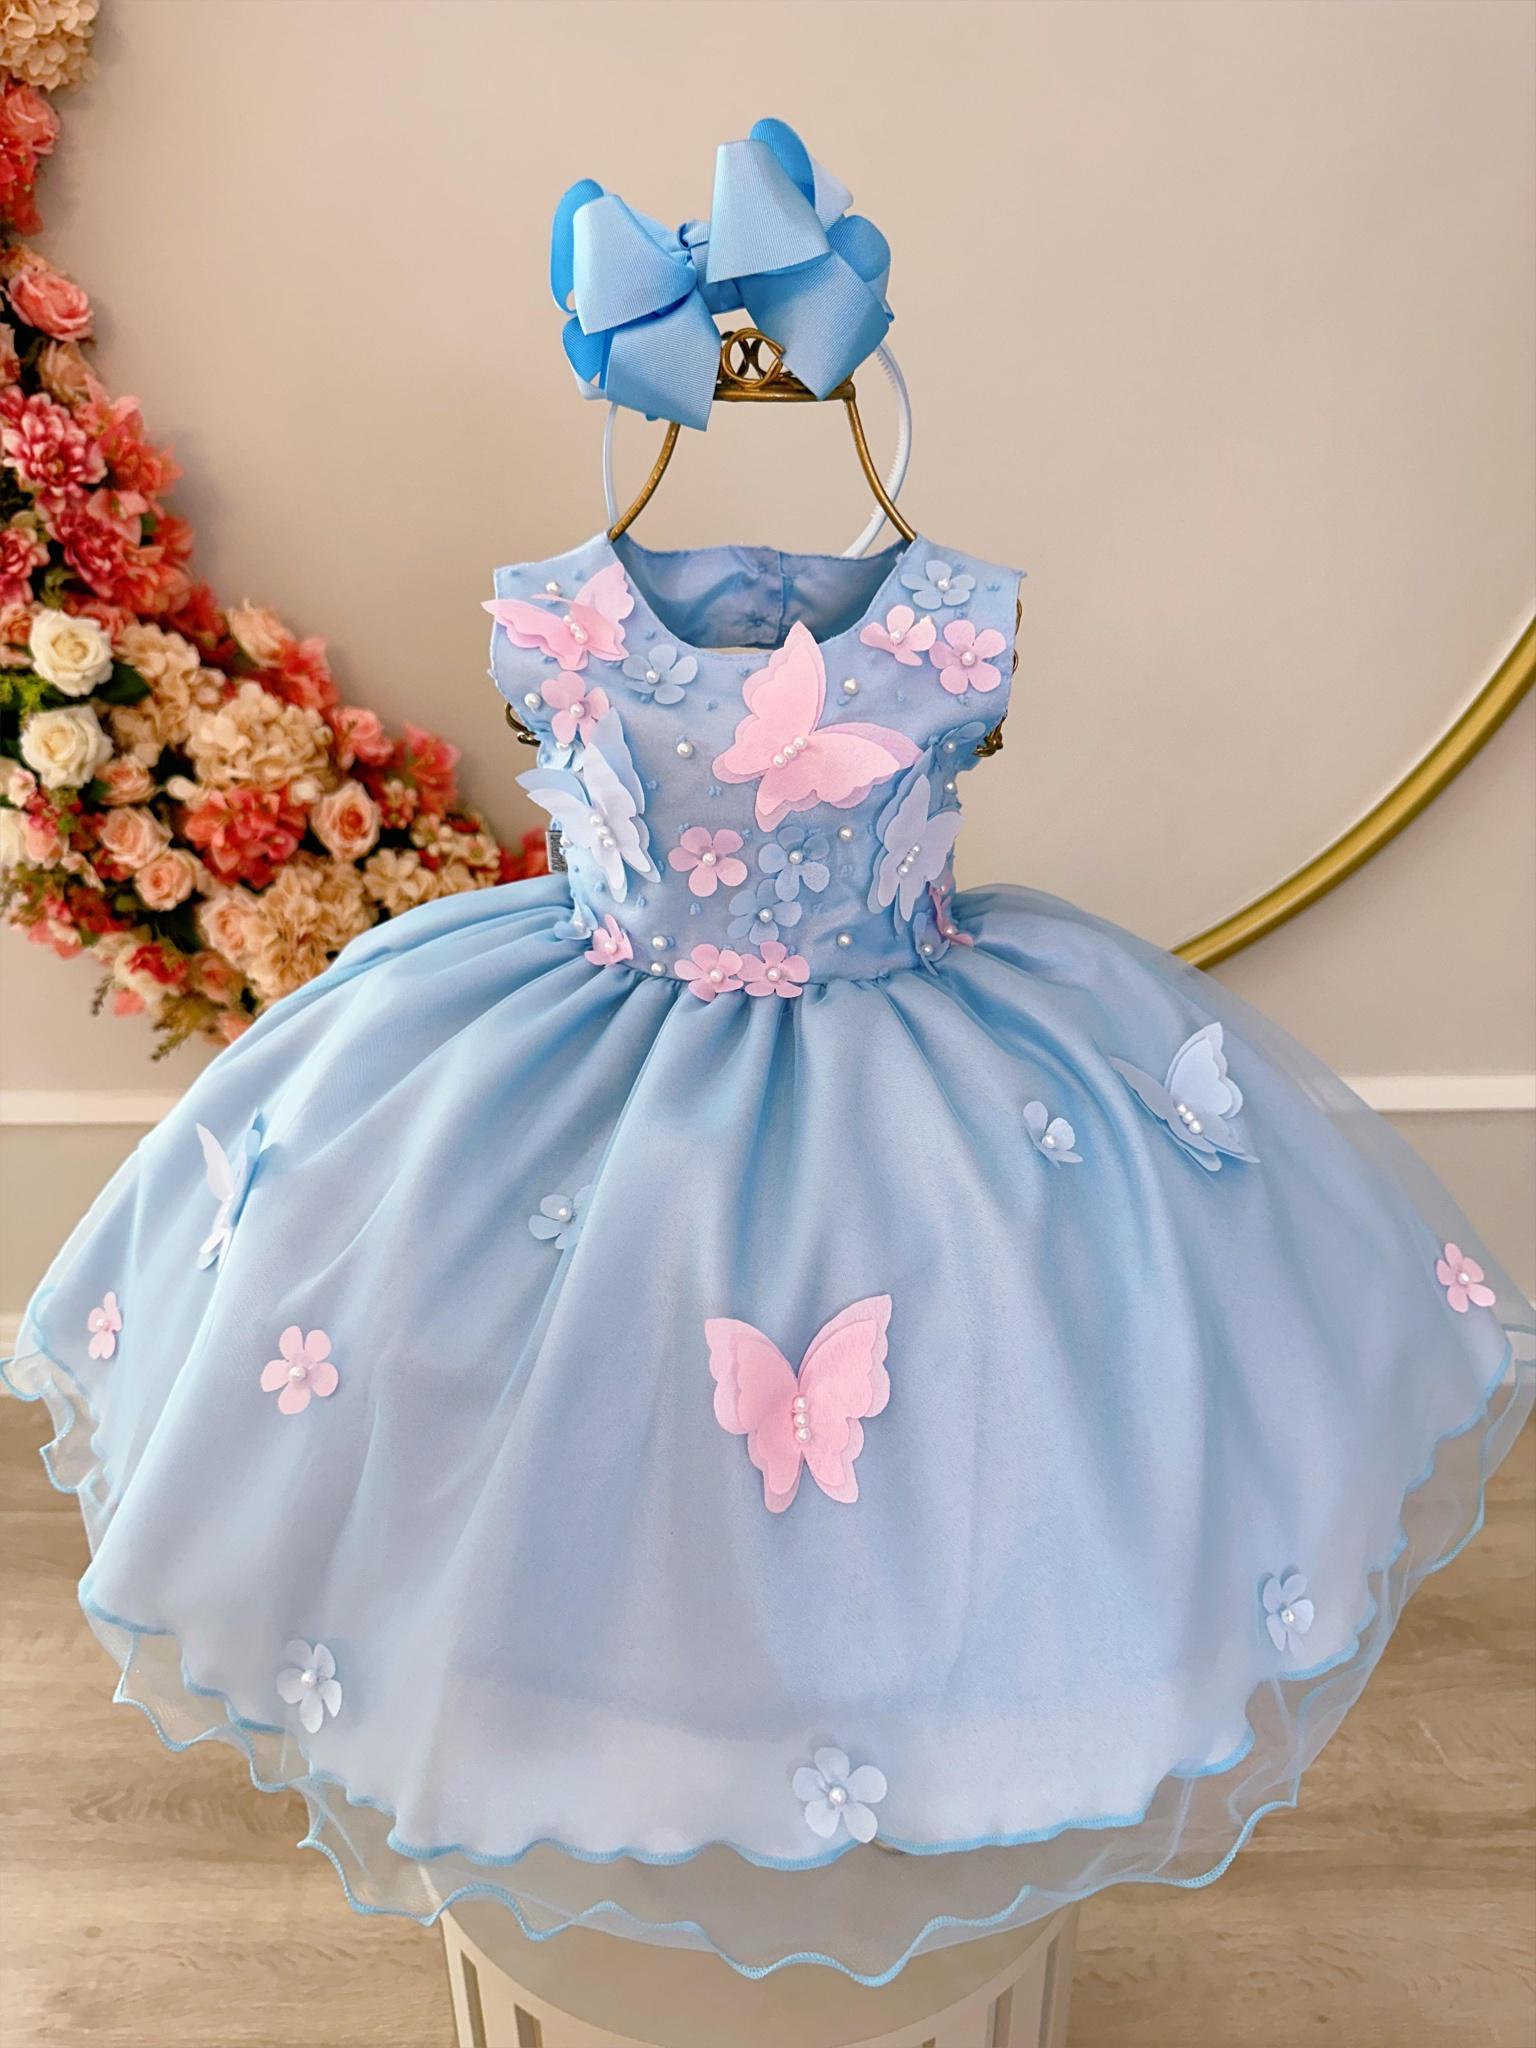 Vestido Infantil Bebê Azul C/ Aplique de Borboletas e Flores